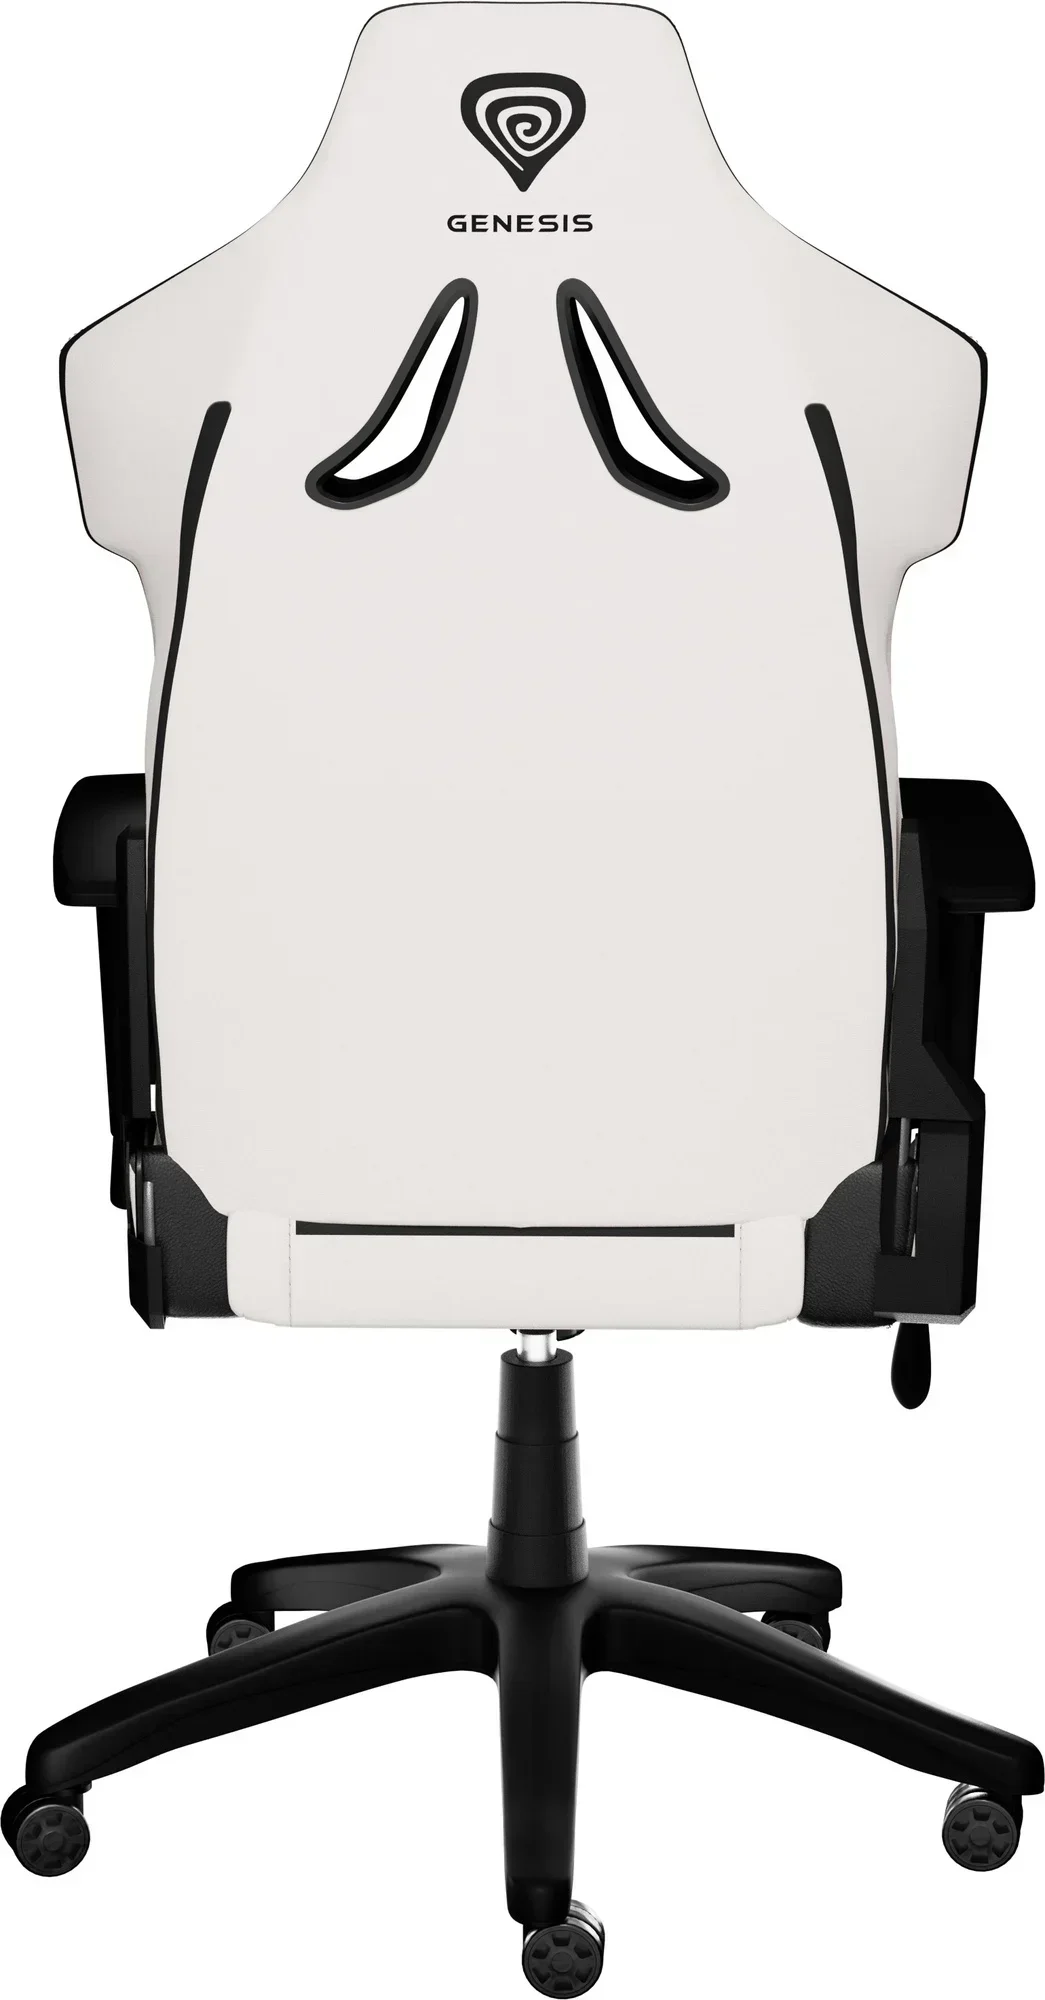 Žaidimų kėdė Genesis Nitro 650 Onyx, balta/juoda - 5